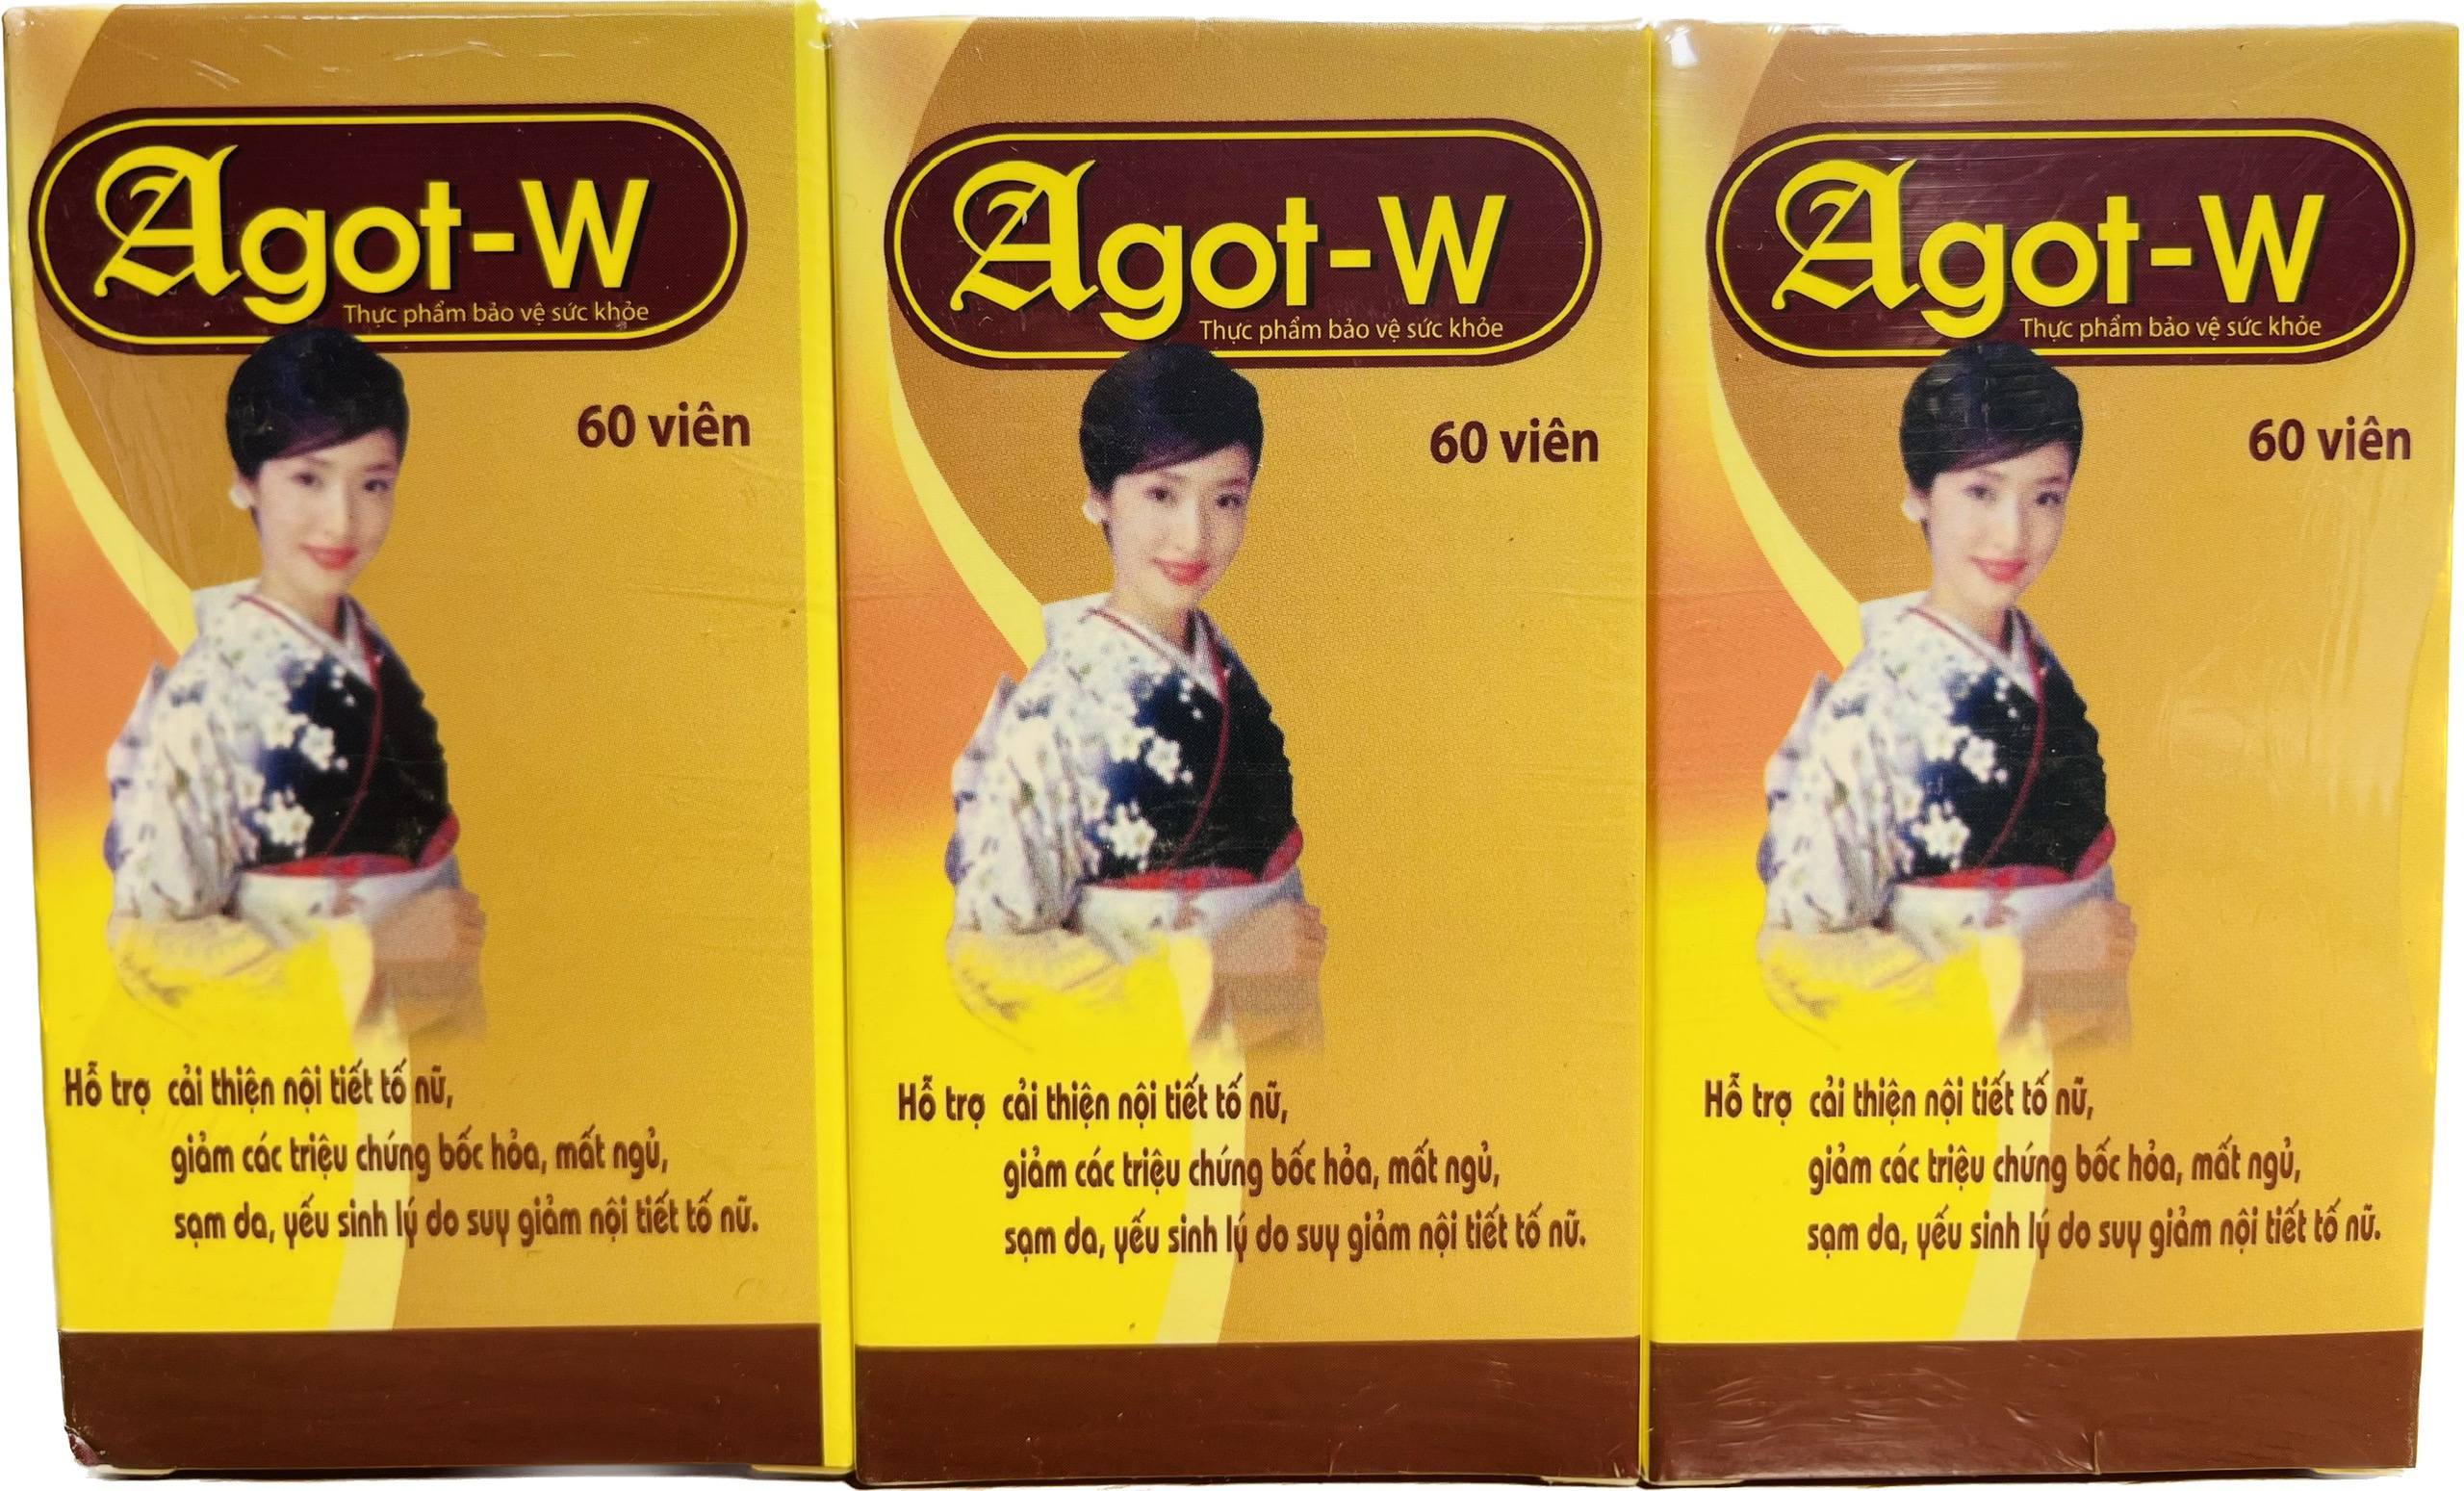 Agot - W hỗ trợ cải thiện nội tiết tố nữ